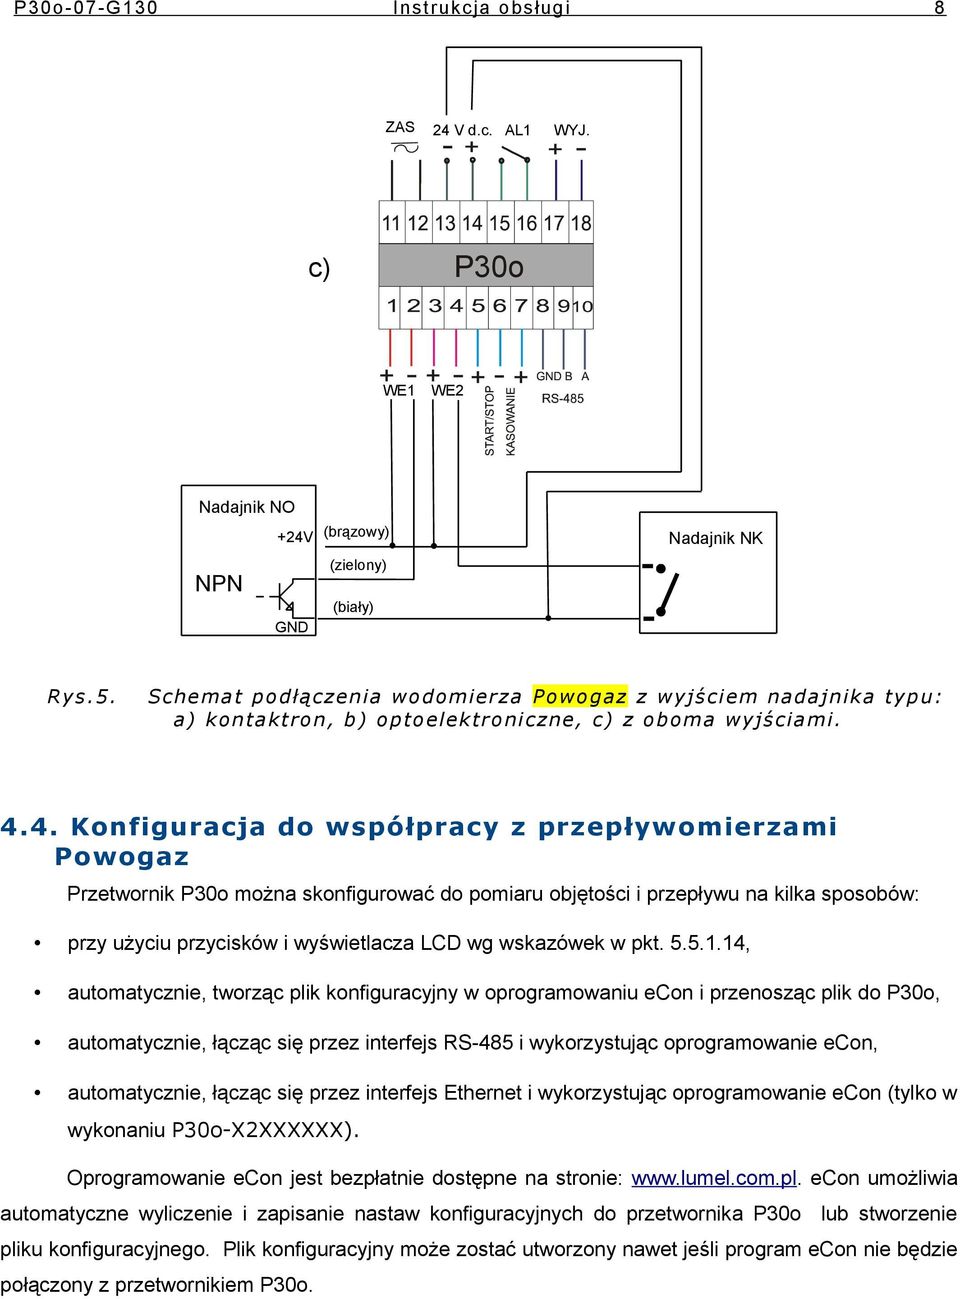 4. Knfiguracja d współpracy z przepływmierzami Pwgaz Przetwrnik P3 mżna sknfigurwać d pmiaru bjętści i przepływu na kilka spsbów: przy użyciu przycisków i wyświetlacza LCD wg wskazówek w pkt. 5.